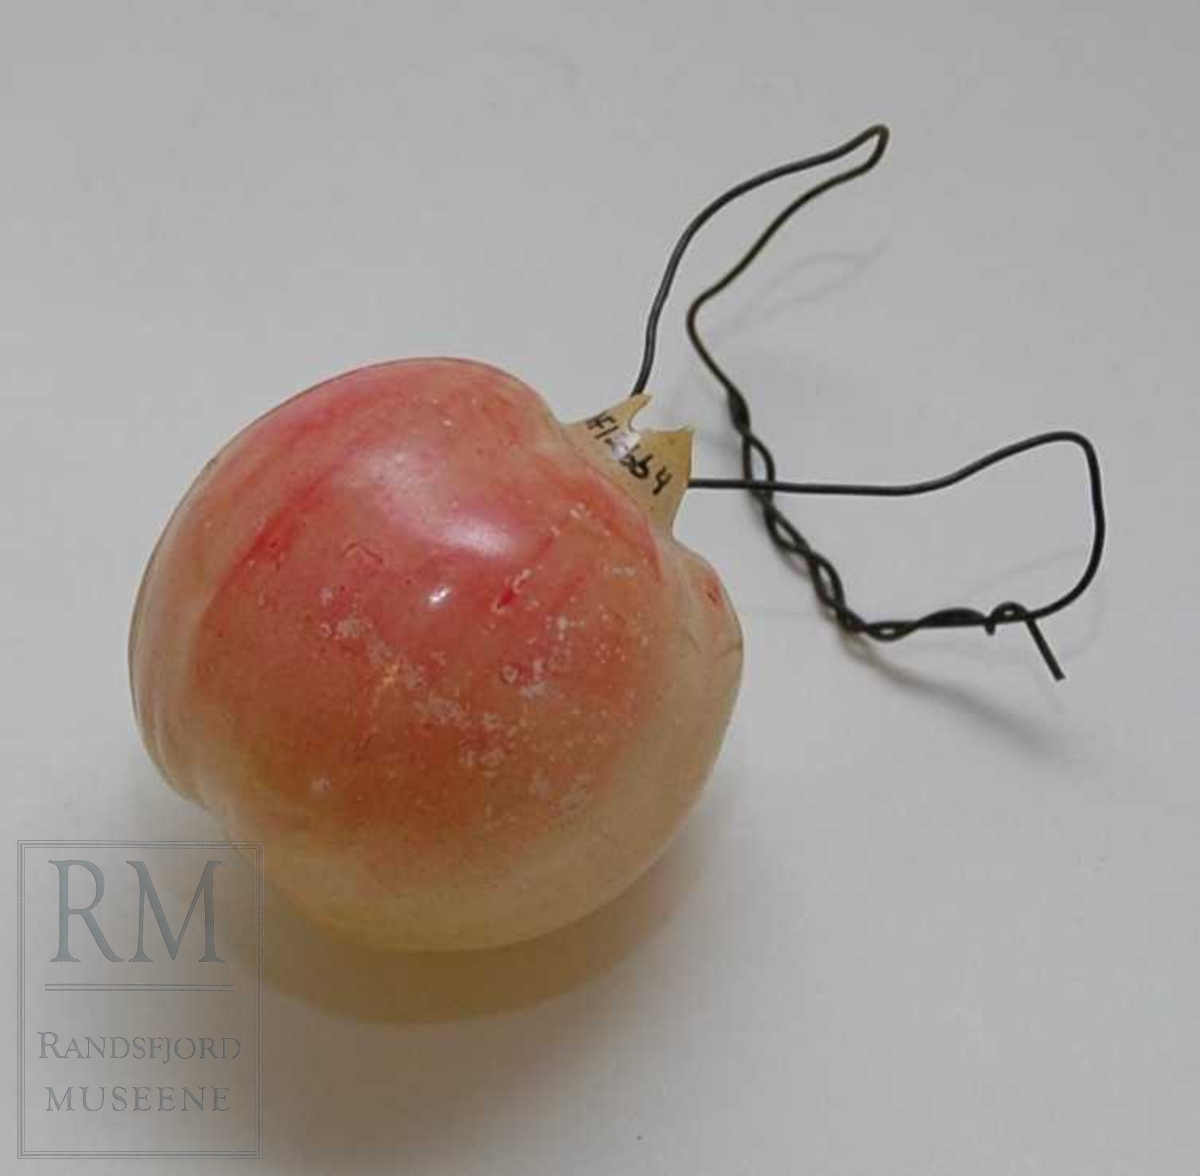 Form: rundt, som et eple. Orginalt oppheng er muligens gått sund. Oppheng laget av fyrstikk og ståltråd. Bare en side har rødmaling.
